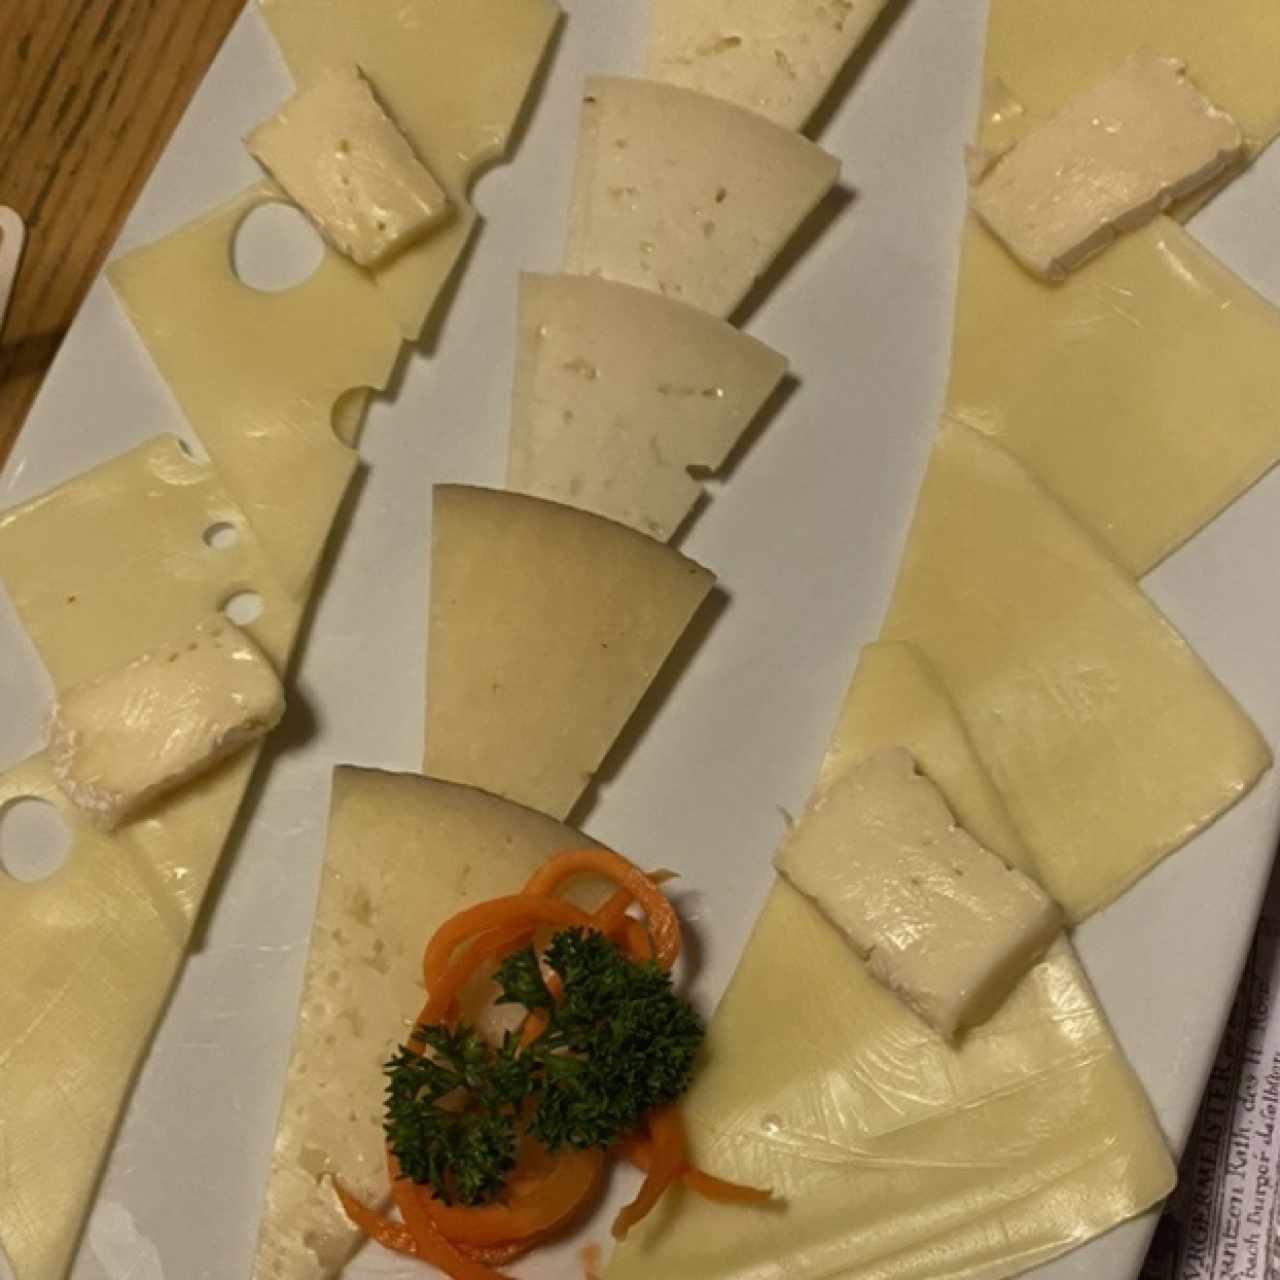 tabla de quesos